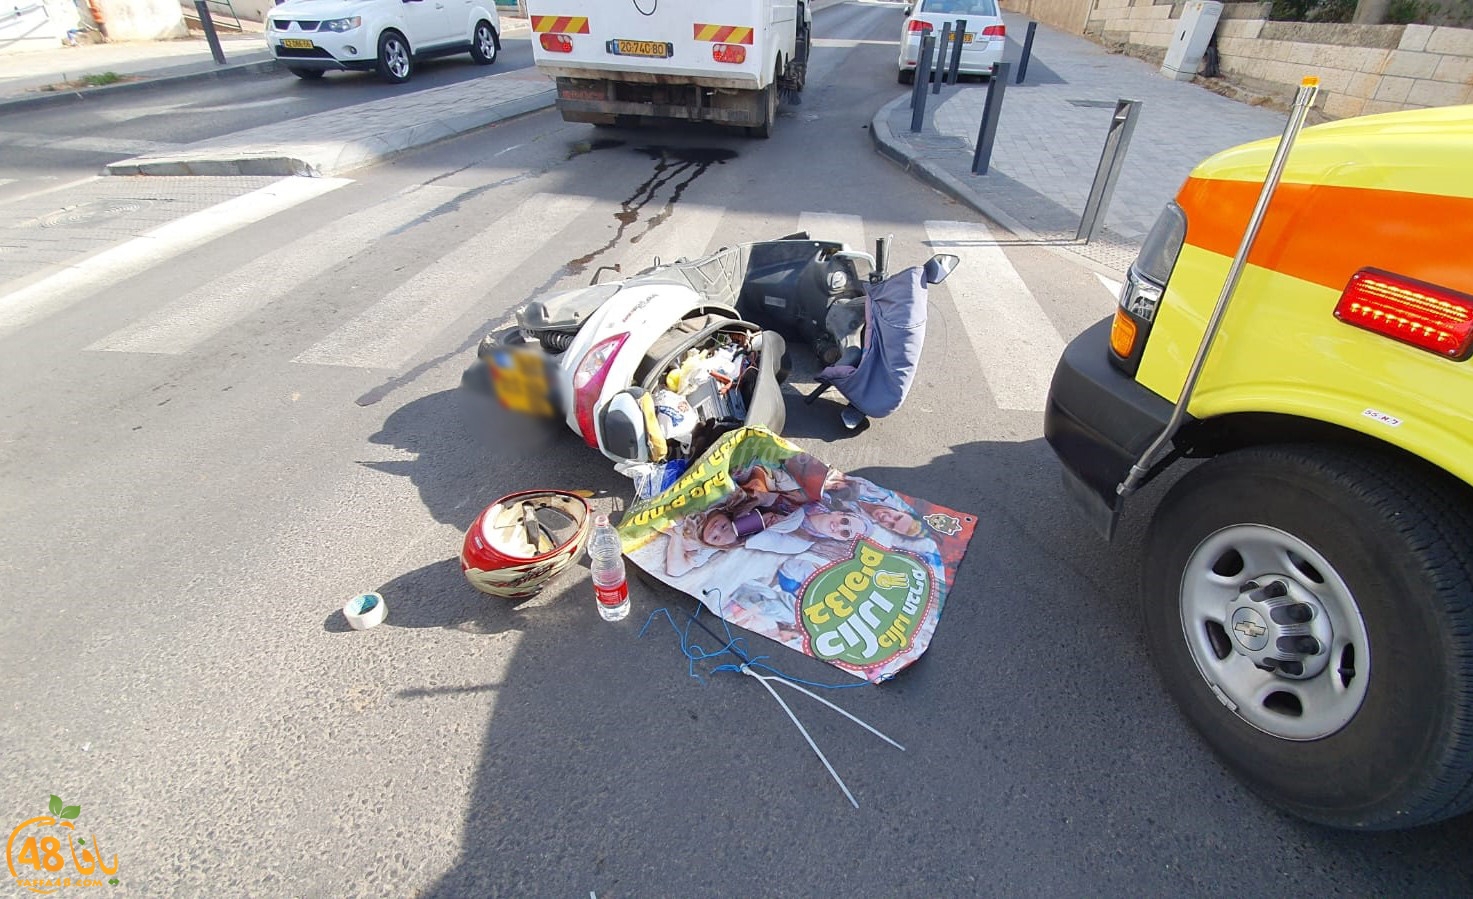  اللد: إصابة متوسطة لراكب دراجة نارية بحادث طرق بالمدينة